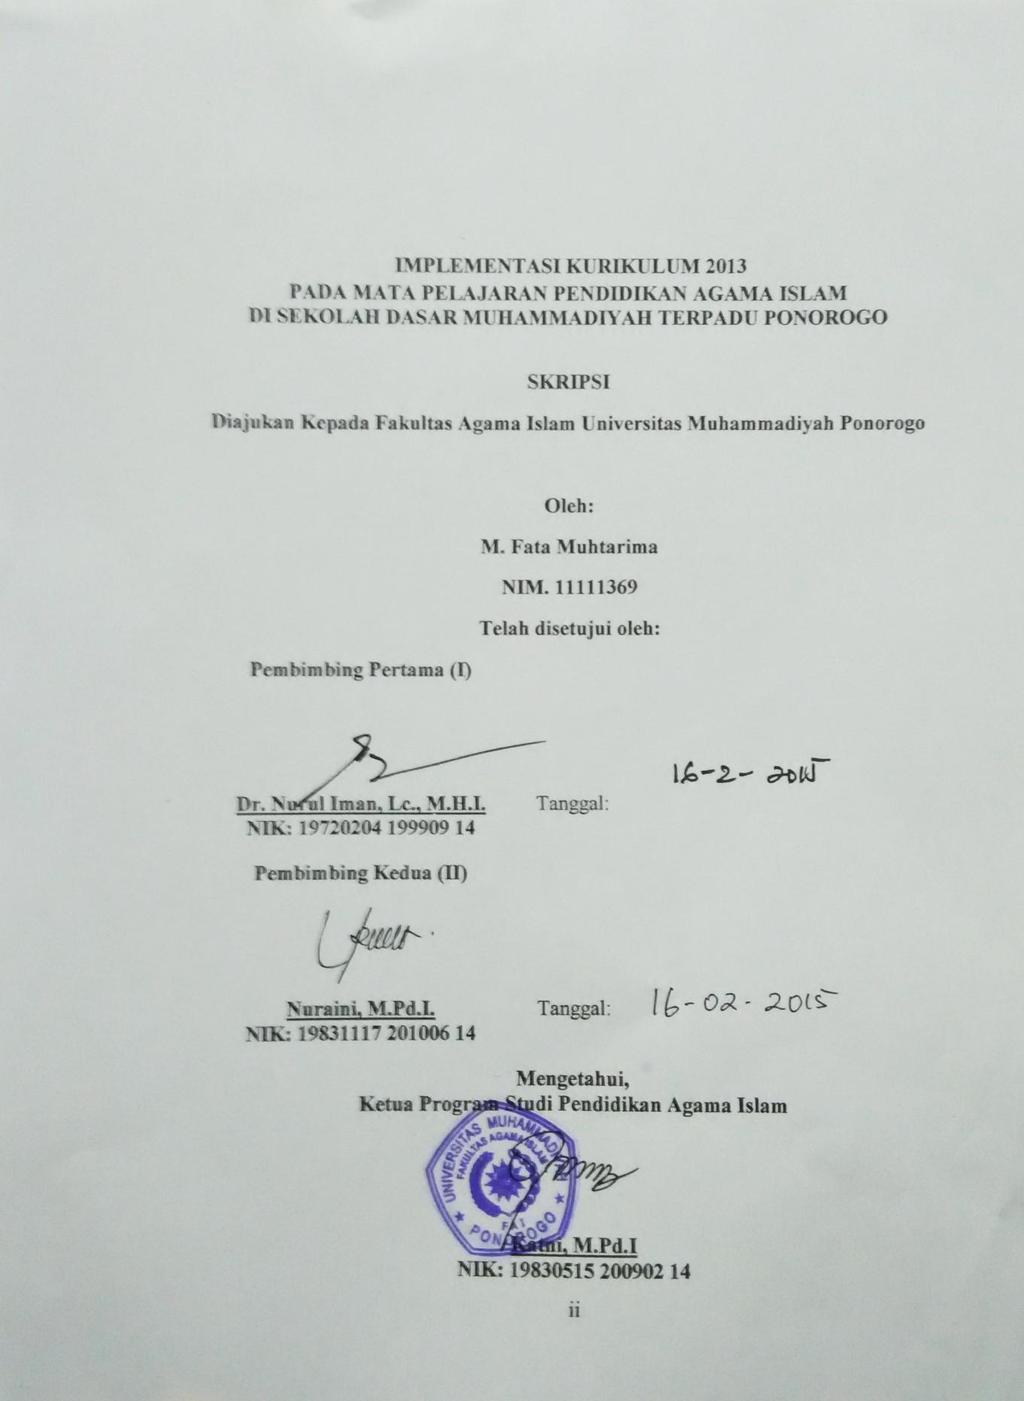 IMPLEMENTASI KURIKULUM 2013 PADA MATA PELAJARAN PENDIDIKAN AGAMA ISLAM DI SEKOLAH DASAR MUHAMMADIYAH TERPADU PONOROGO SKRIPSI Diajukan Kepada Fakultas Agama Islam Universitas Muhammadiyah Ponorogo